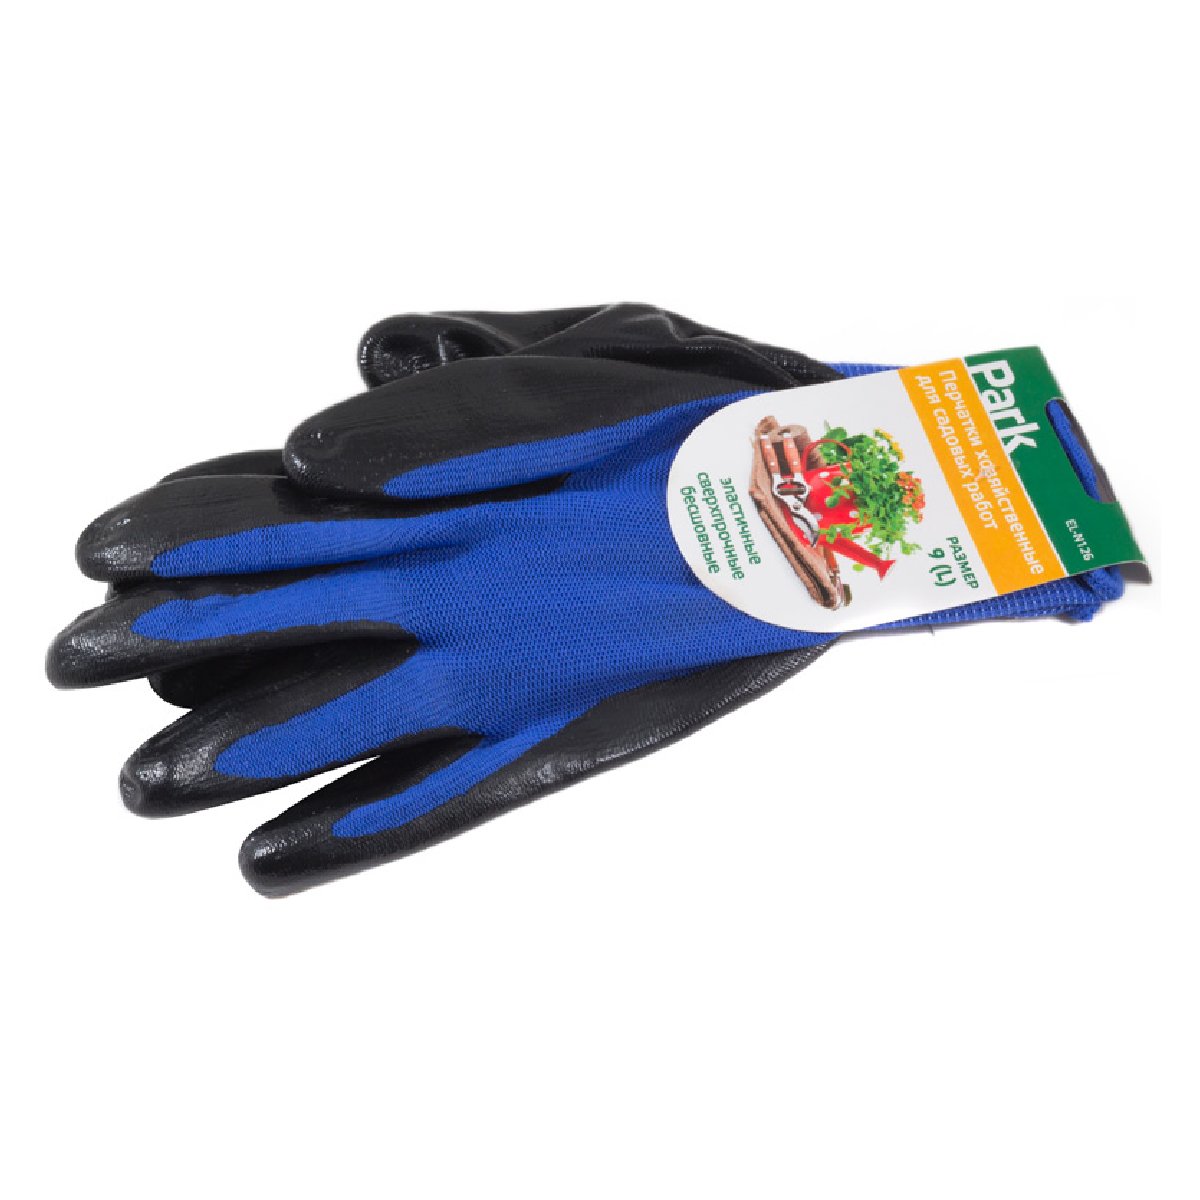 Перчатки хозяйственные PARK EL-N126, размер 9 (L), нитрил+полиэстер, цвет синий с черным (001058)Купить